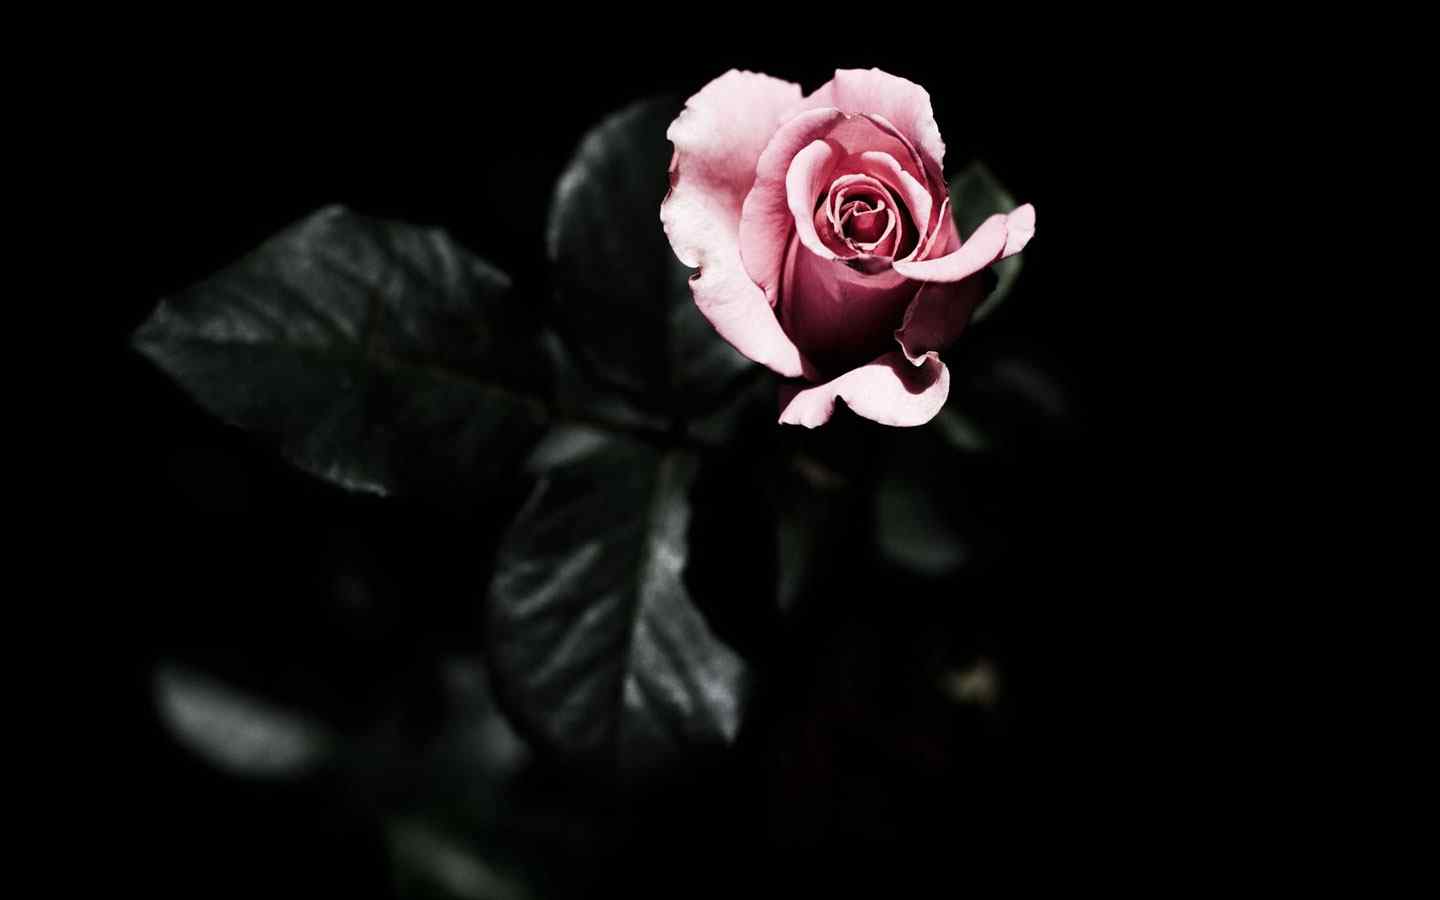 暗香玫瑰摄影壁纸